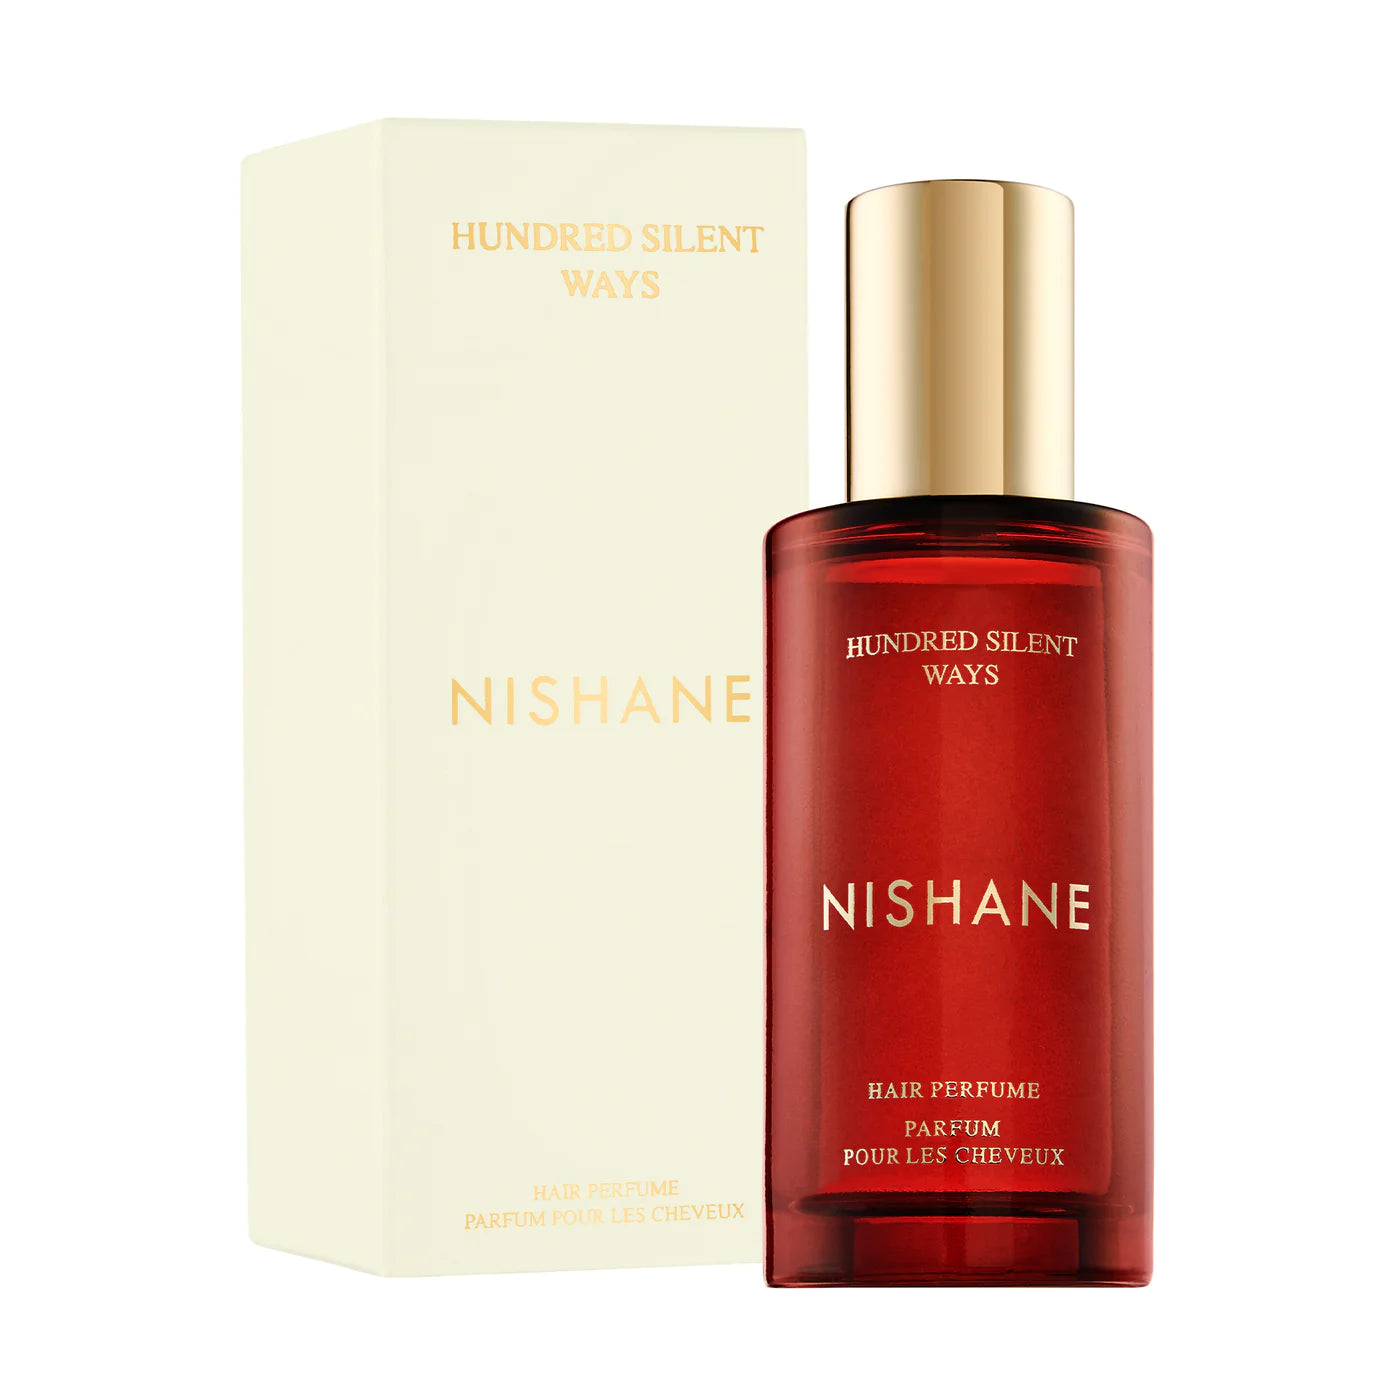 Hundred Silent Ways Hair Perfume Nishane